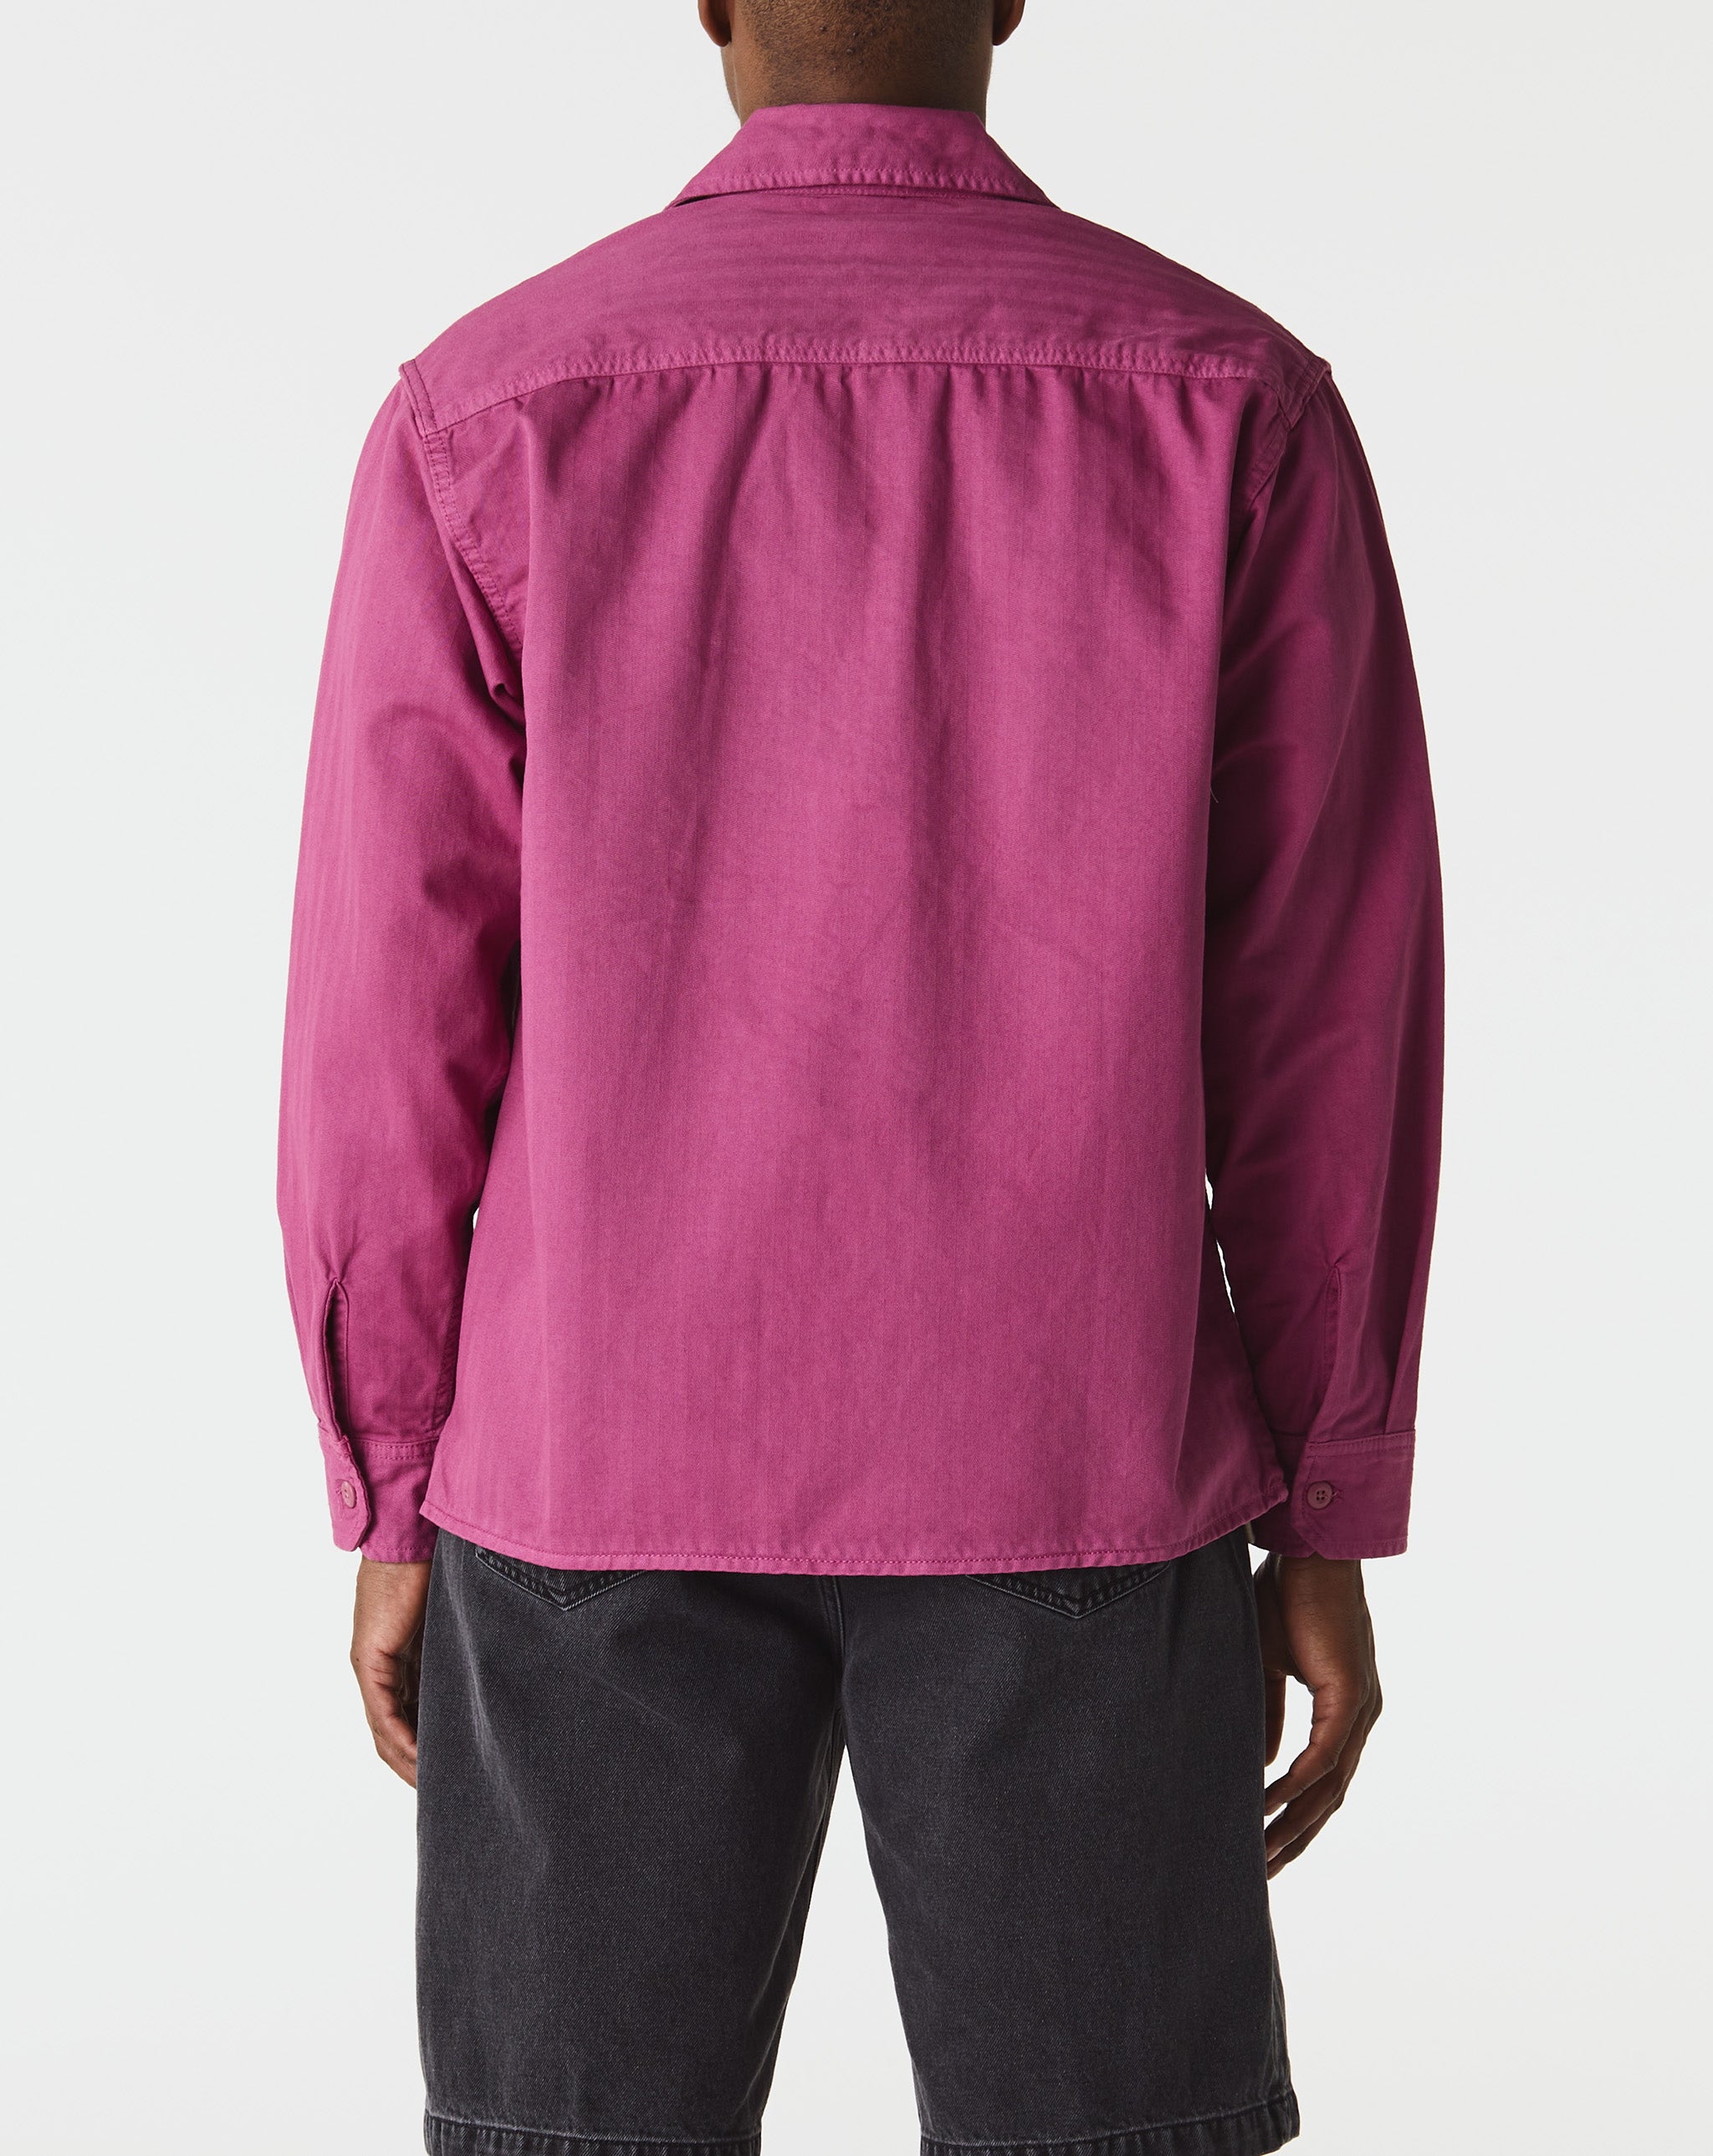 Carhartt WIP Painer Shirt Jacket  - Cheap Urlfreeze Jordan outlet